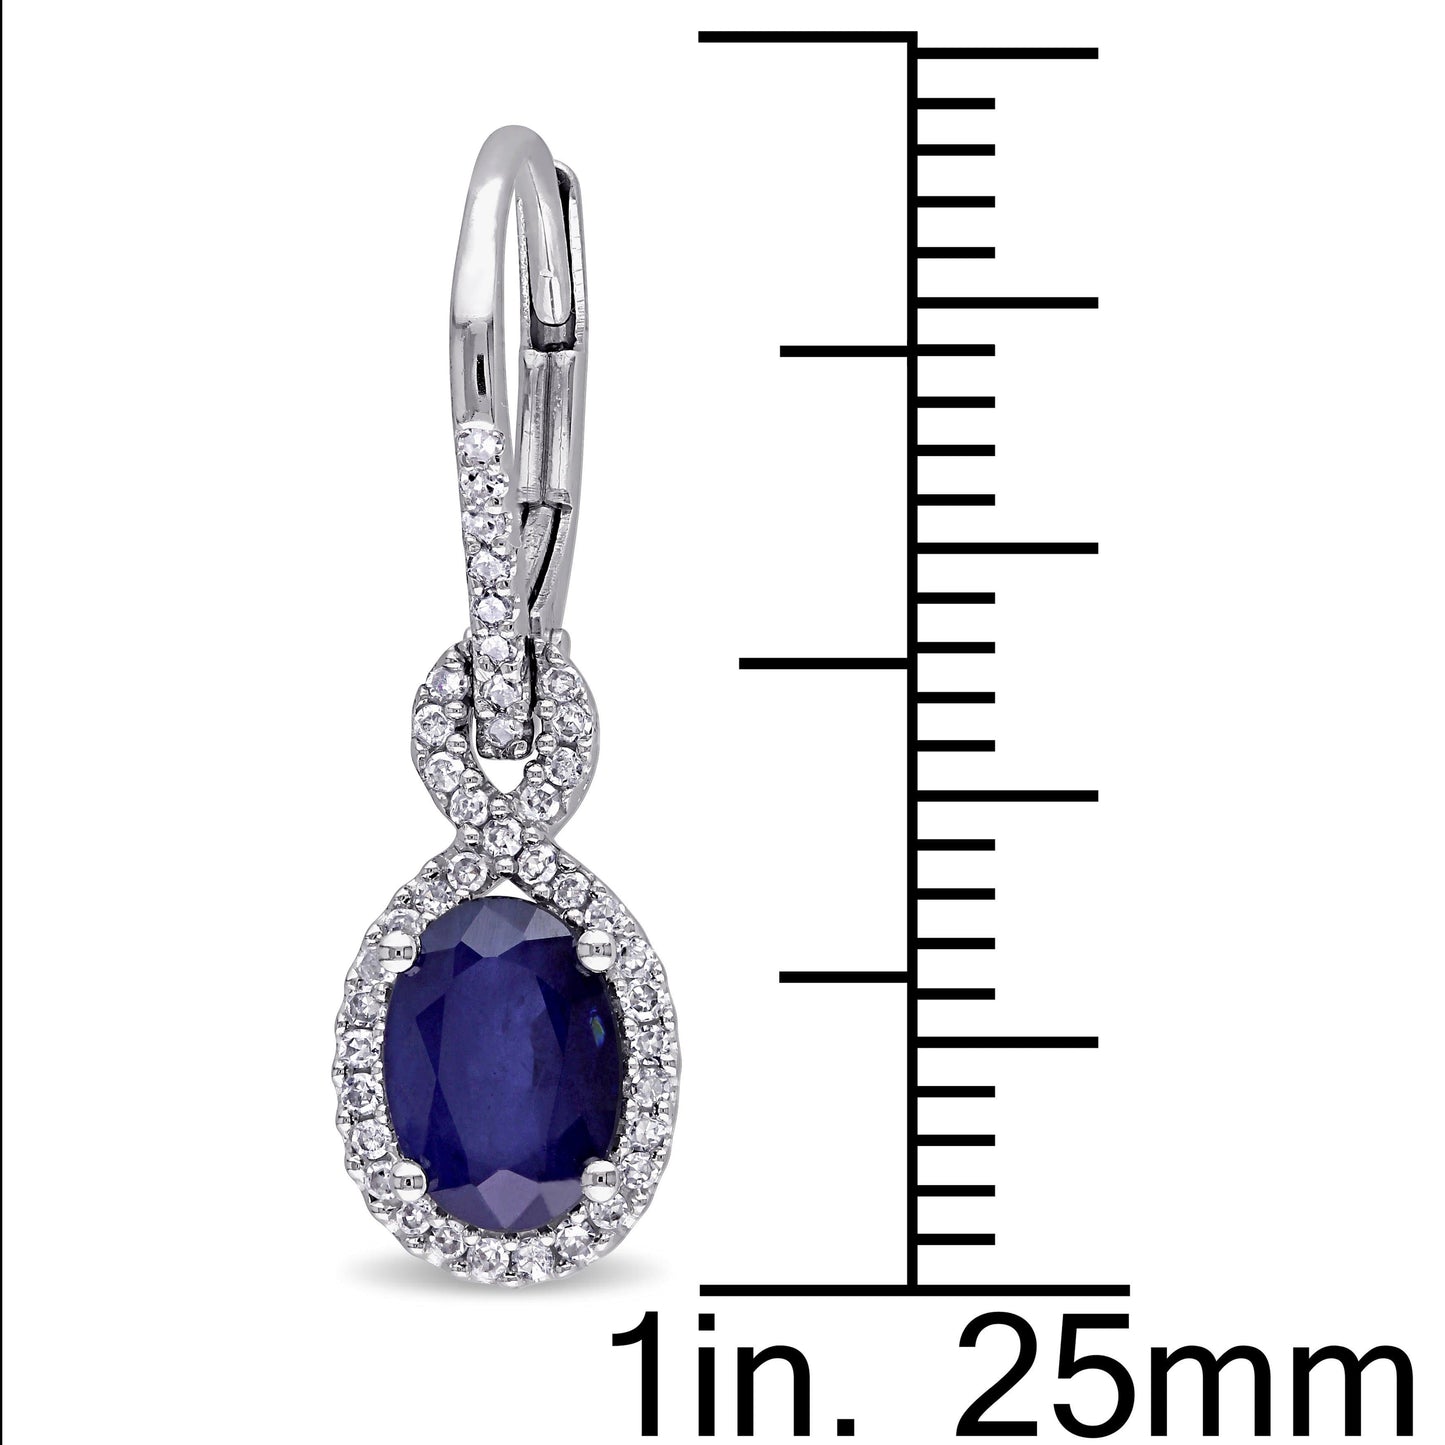 Sophia B Oval Sapphire & Diamond Earrings